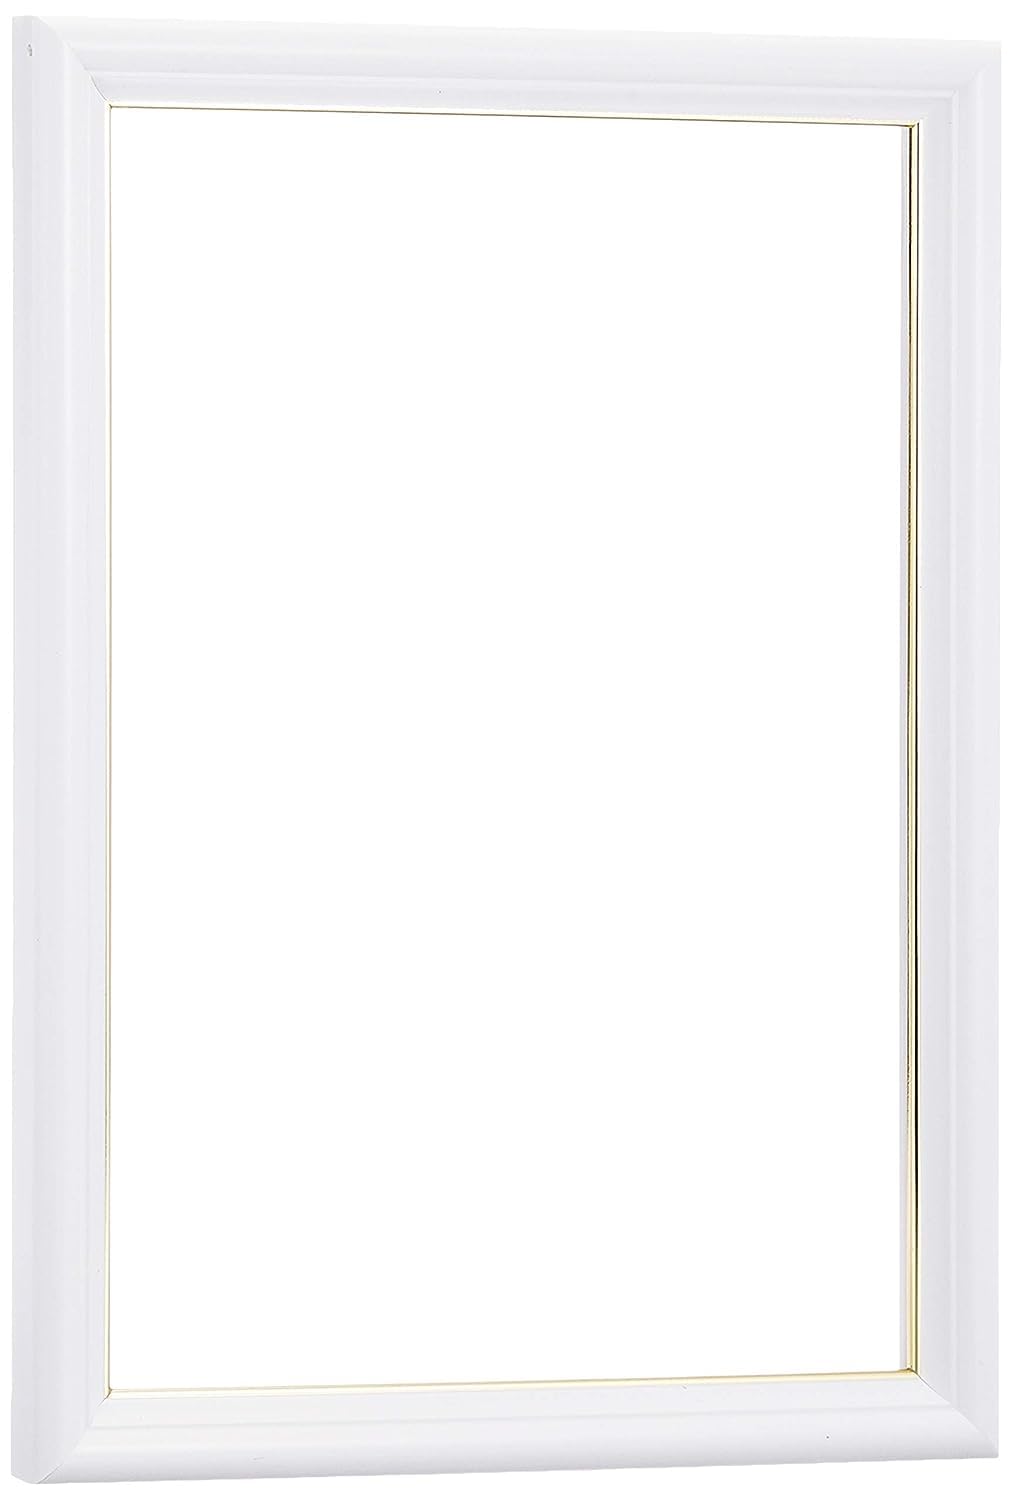 エンスカイ パズルフレーム アートクリスタルジグソー専用 ホワイト(18.2x25.7cm)